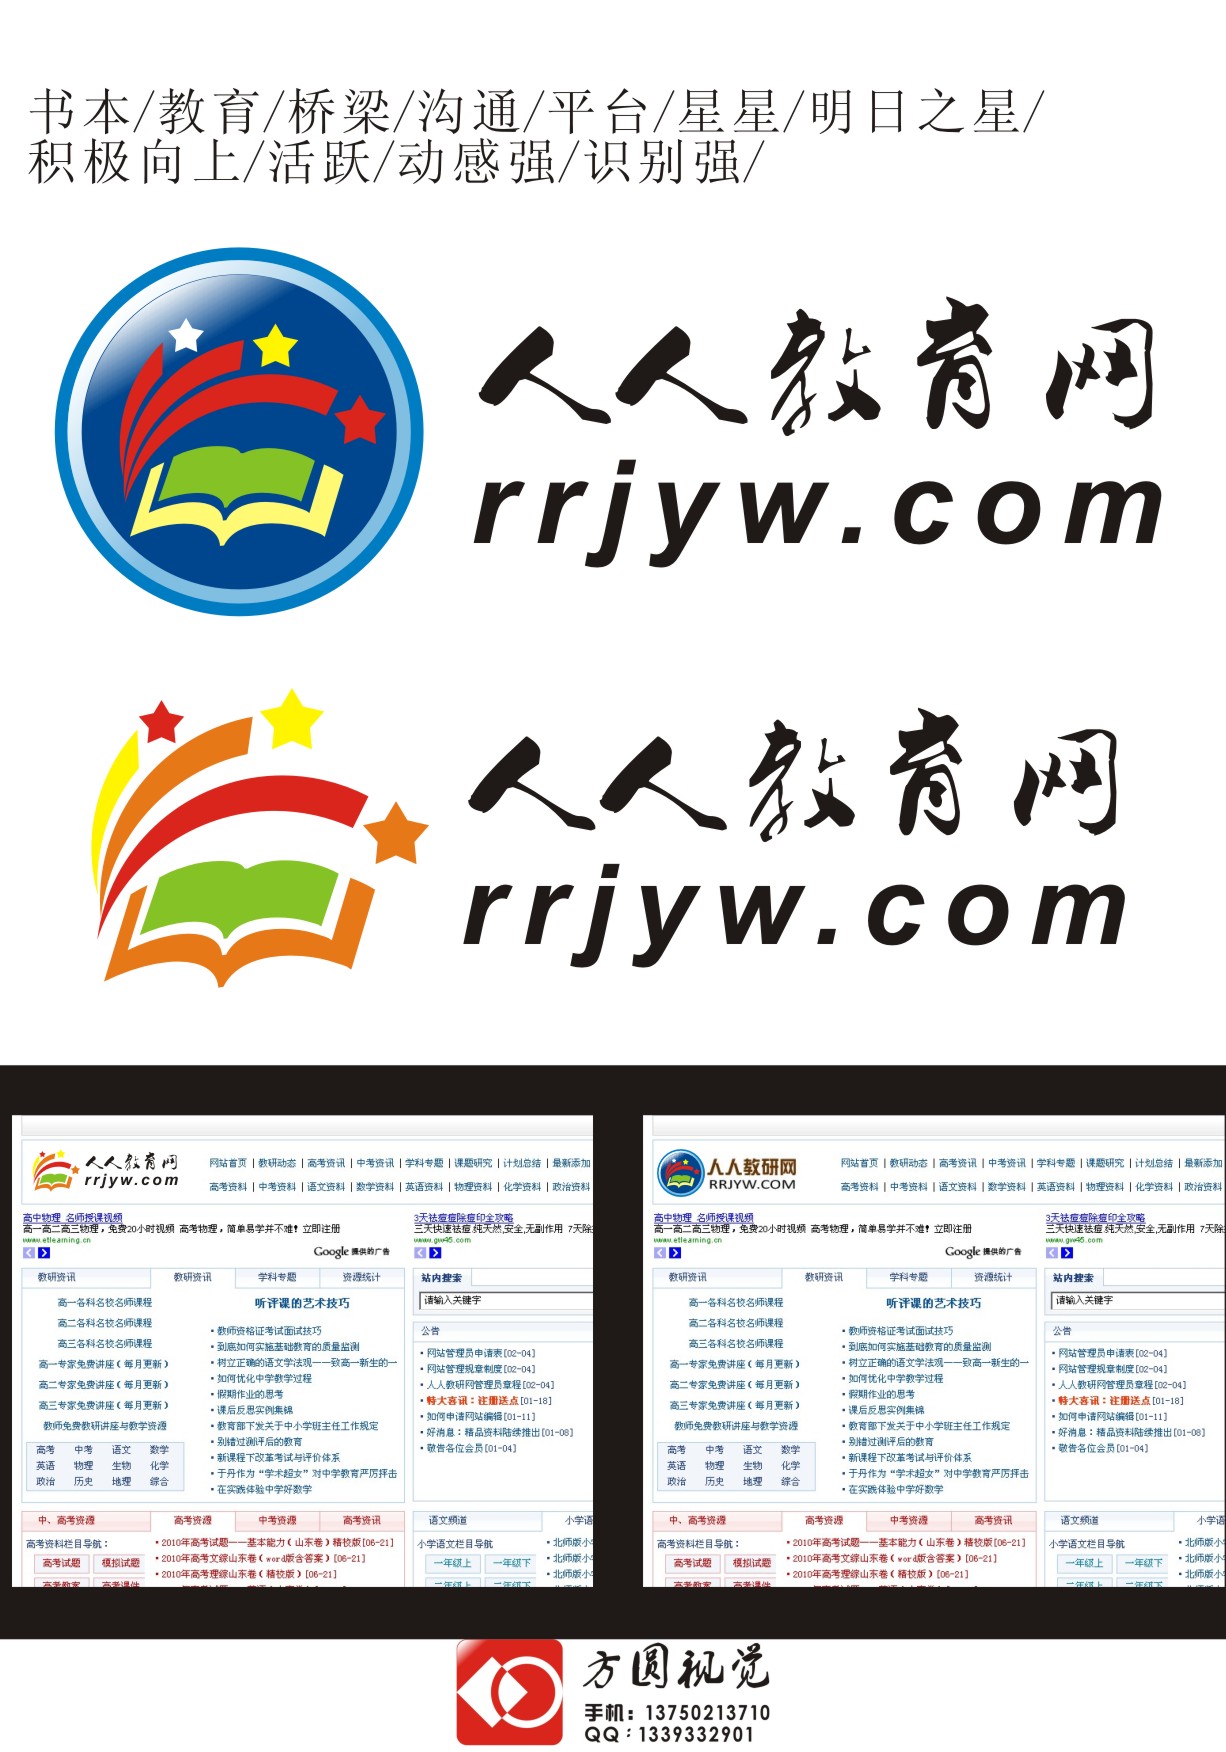 人人教育网网站logo设计_50元_K68威客任务